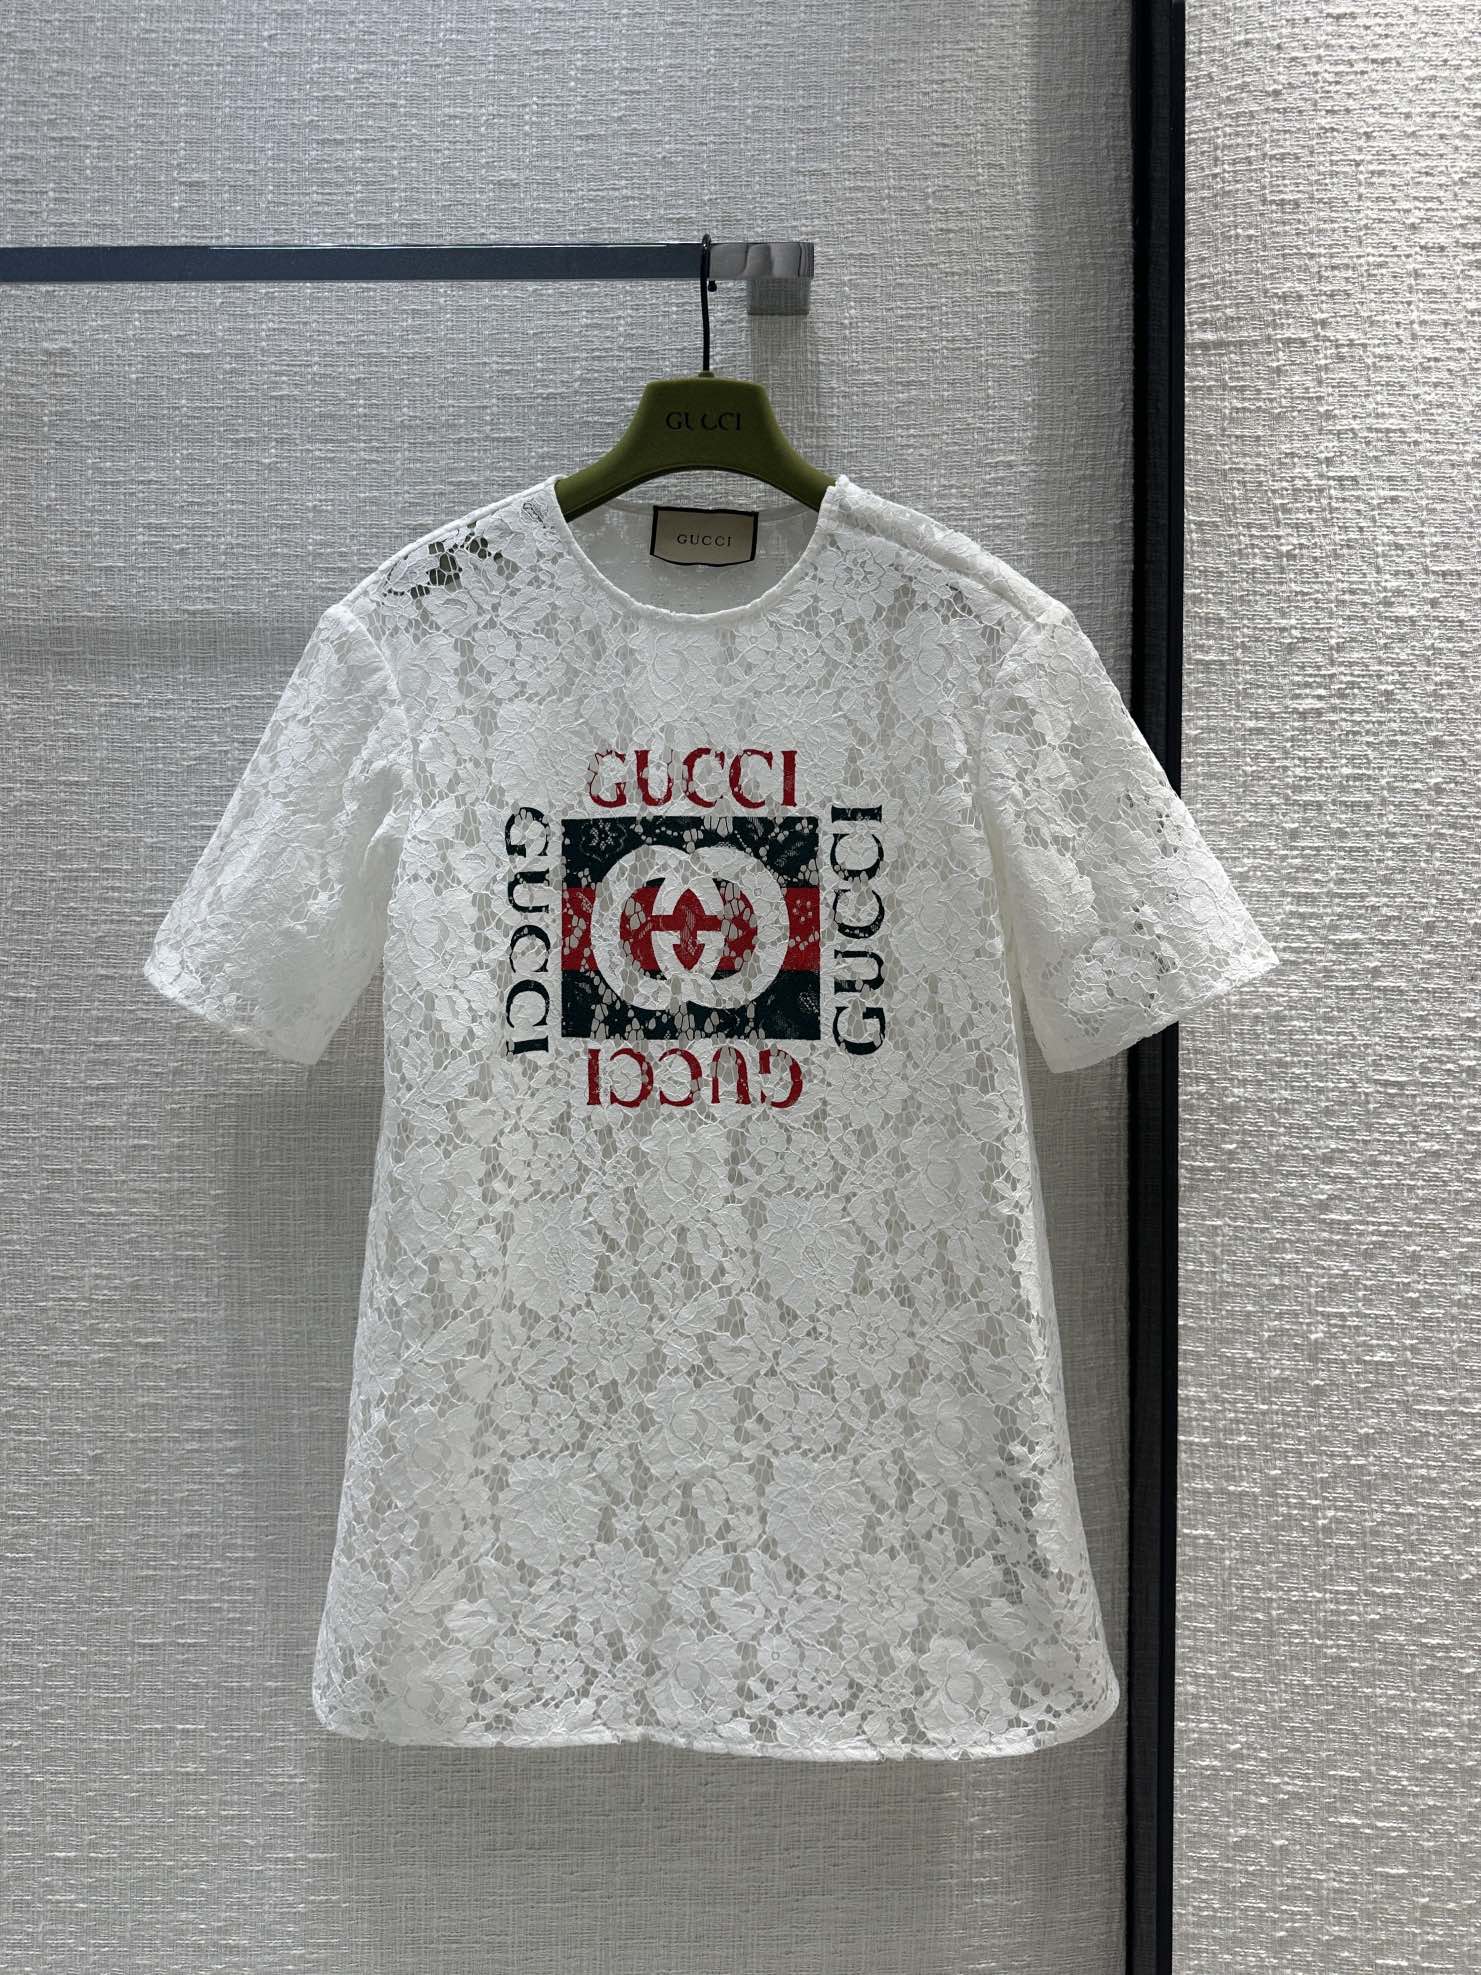 GUCCIプリント フローラル レース トップ グッチ Tシャツ コピー ホワイト